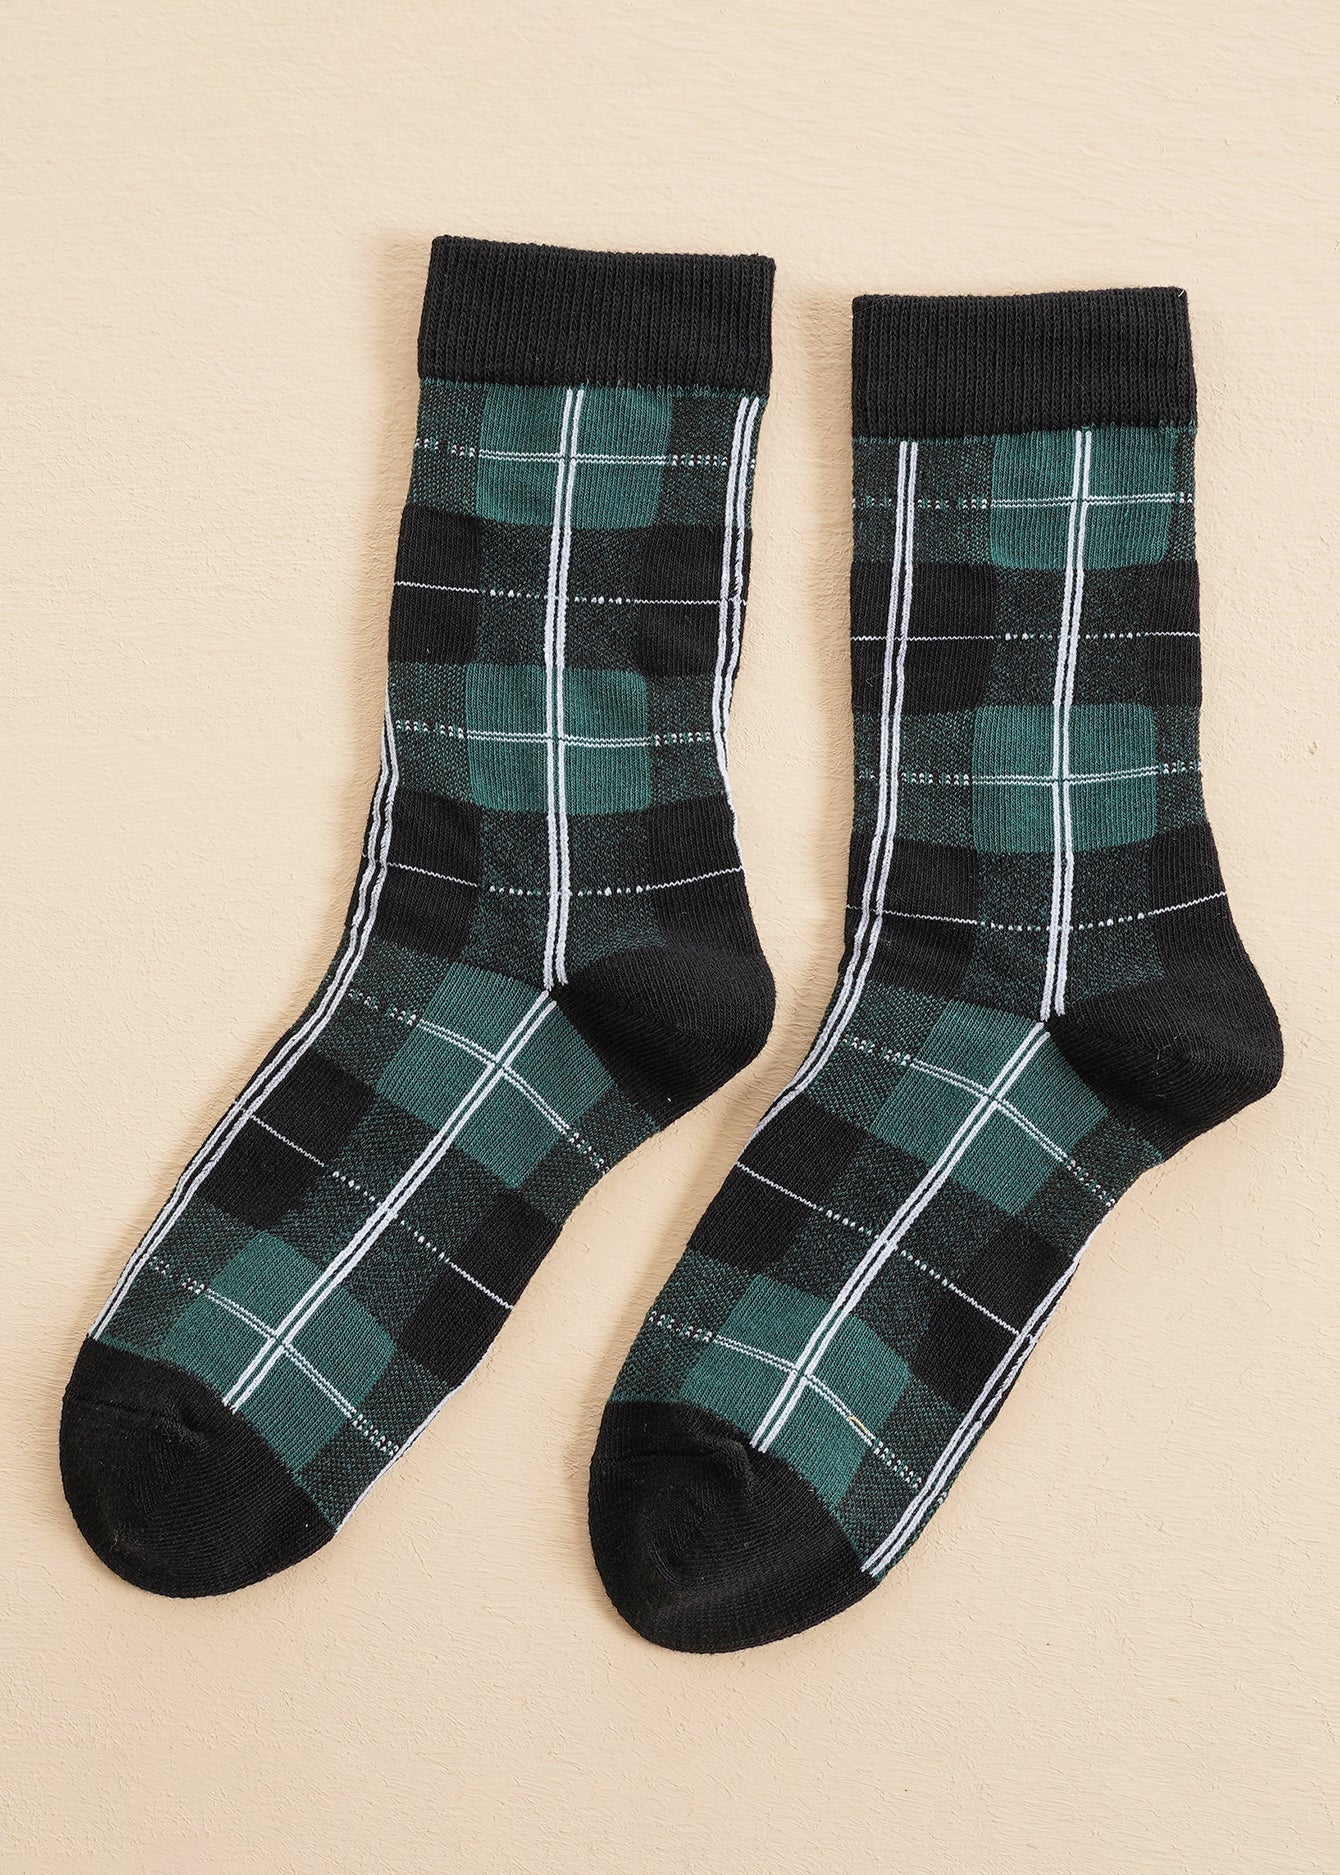 5 Pairs Plaid Socks Sai Feel